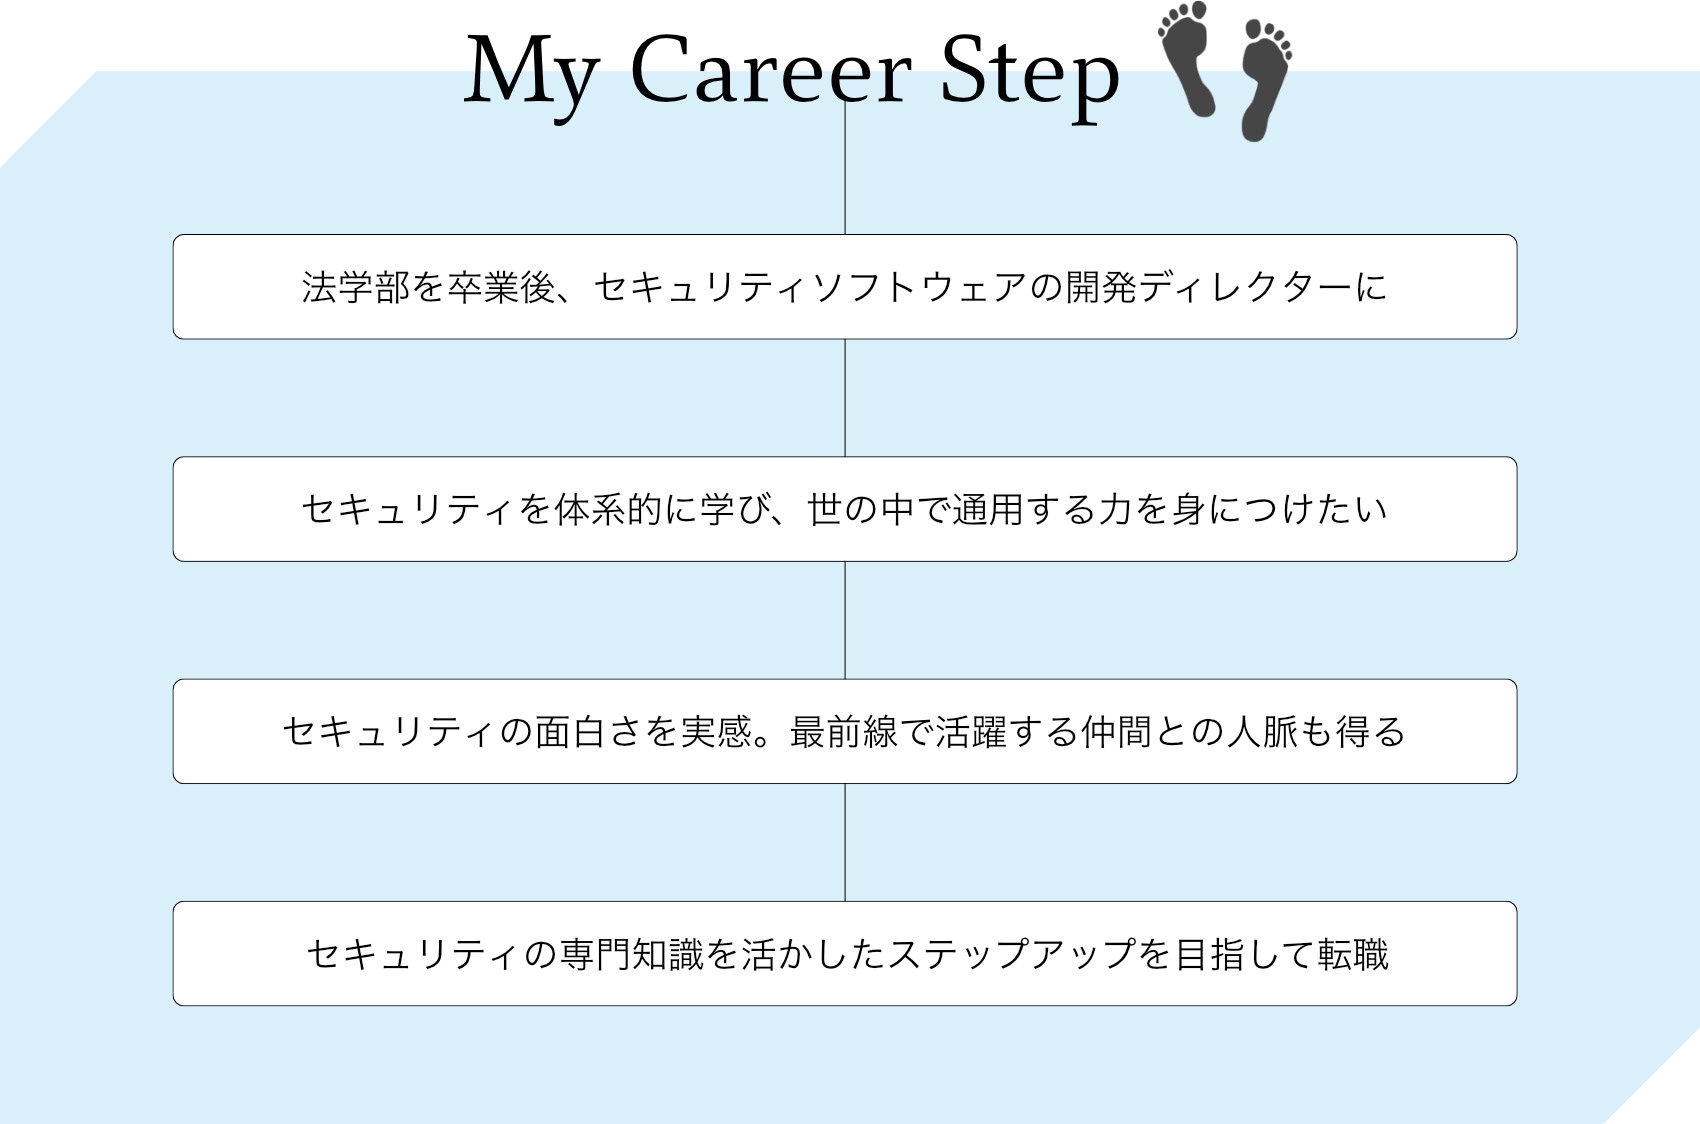 E - My Career Step